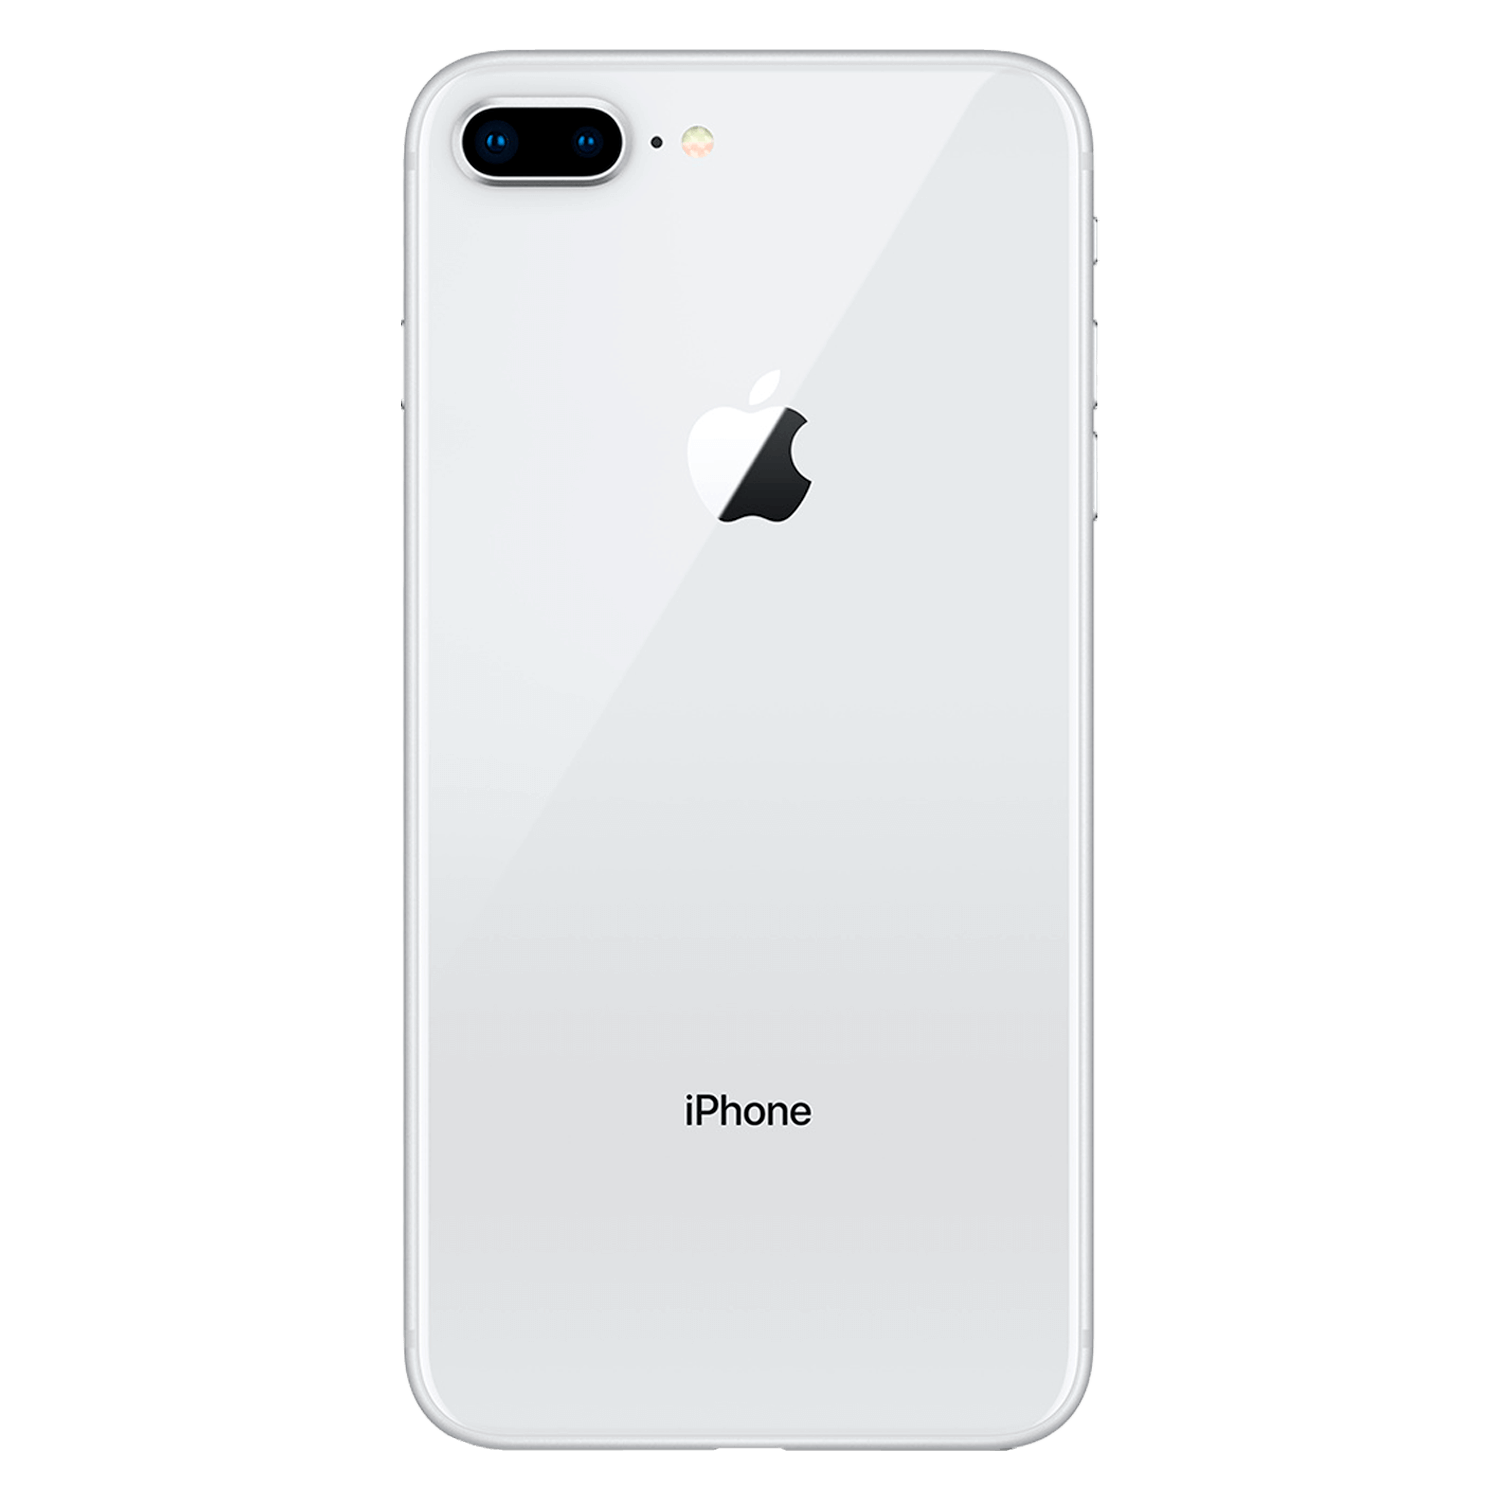 Apple iPhone 8 Plus *Swap A+* A1864 1897 64GB 3GB RAM Tela 5.5" - Prata (Somente Aparelho)